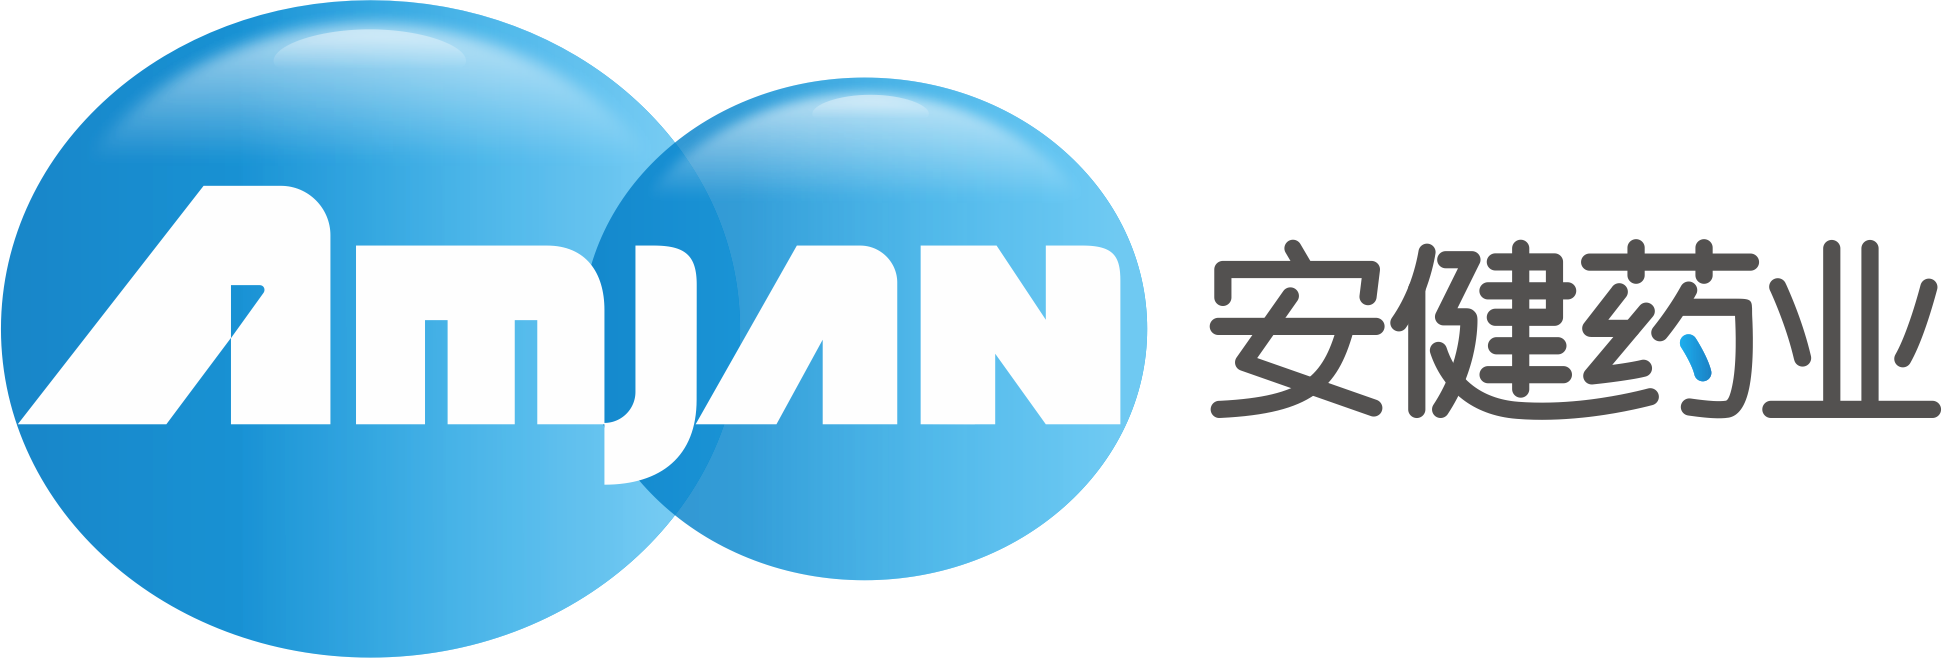 安健logo